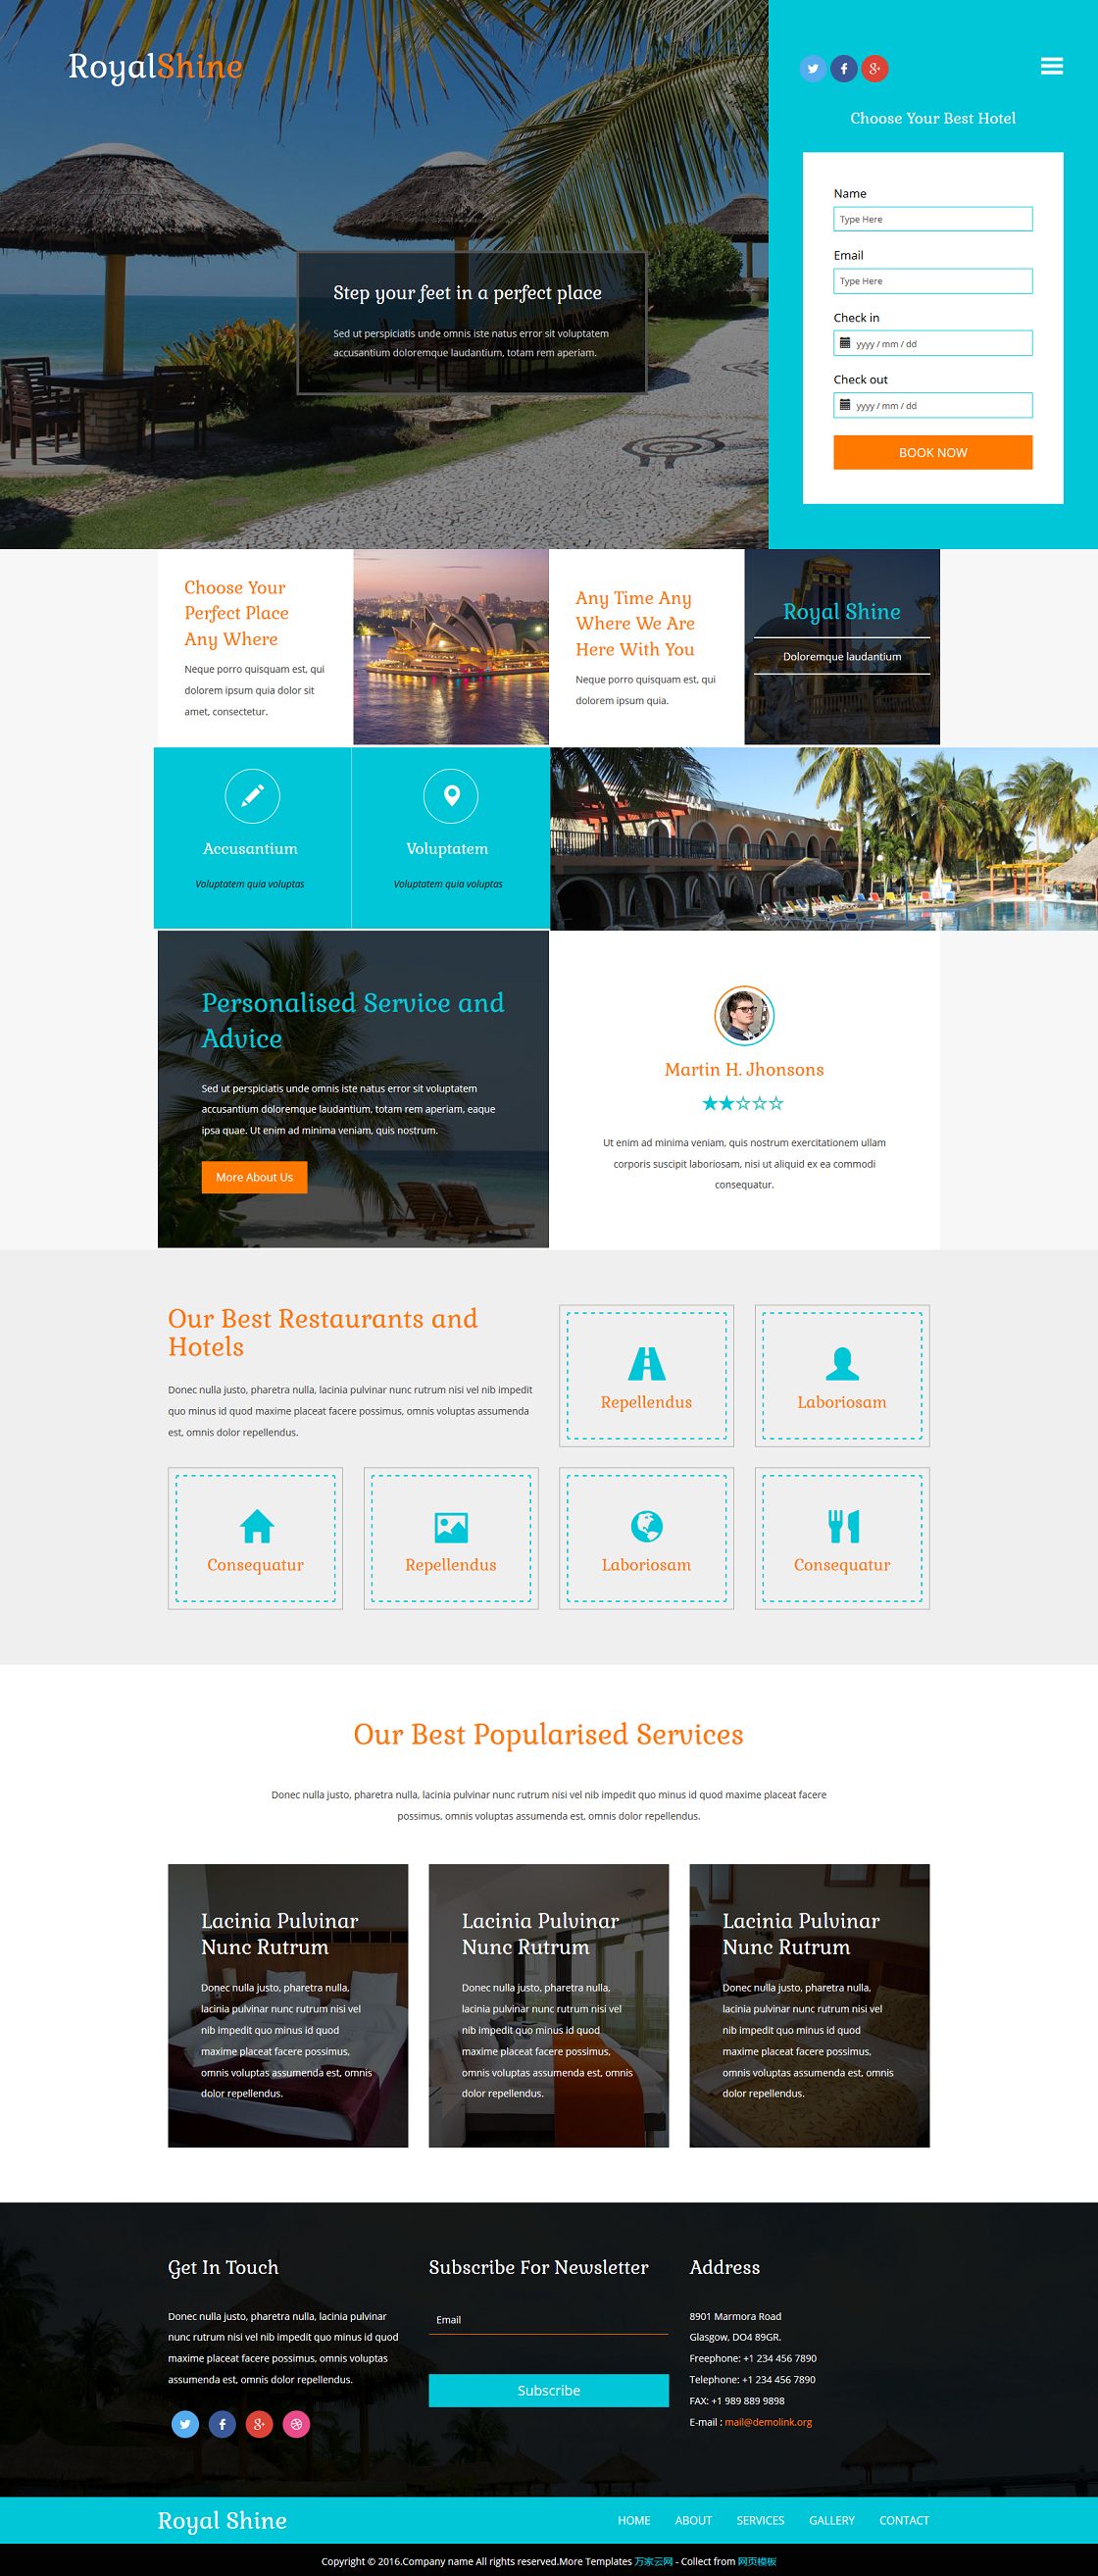 海滨旅游度假圈酒店服务企业网站模板